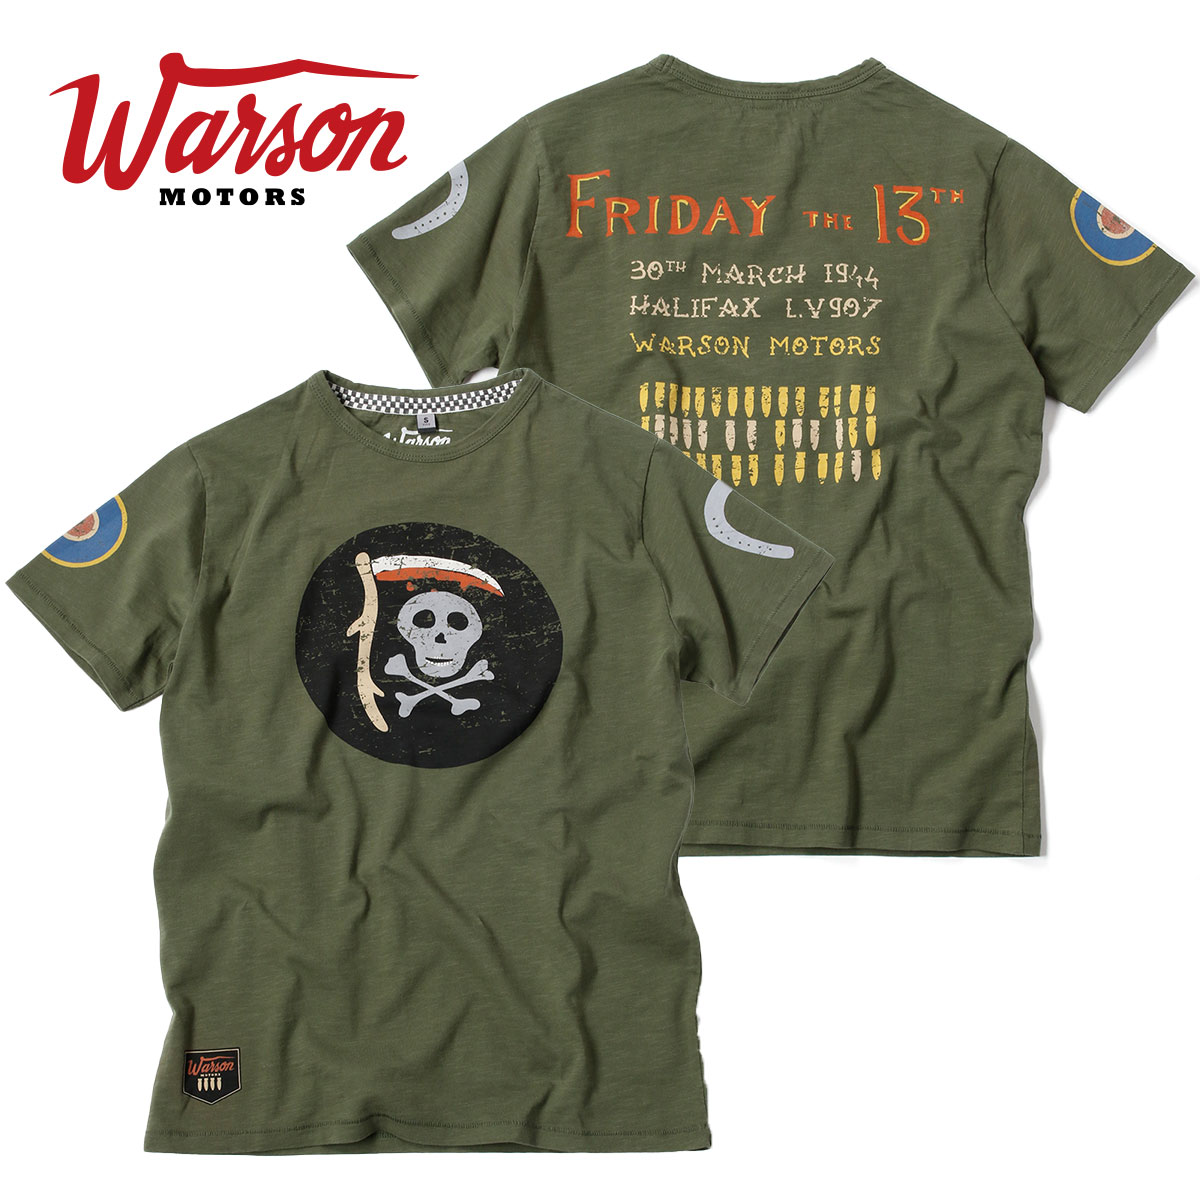 Tシャツ ワーソンモータース フライデー ザ 13th Tシャツ 車 ウェア Warson Motors